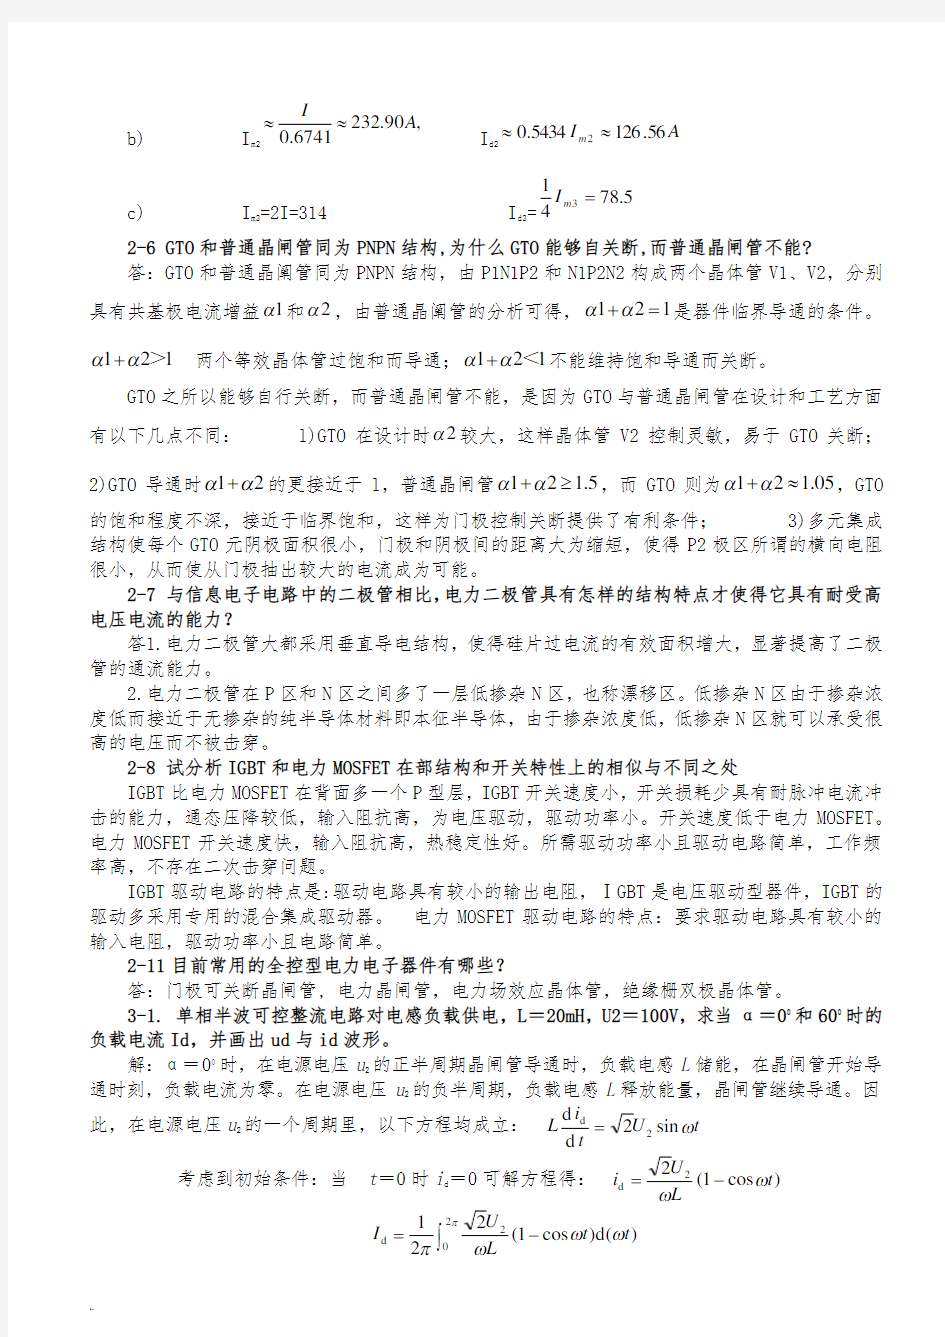 电力电子技术(王兆安第五版)课后习题全部答案